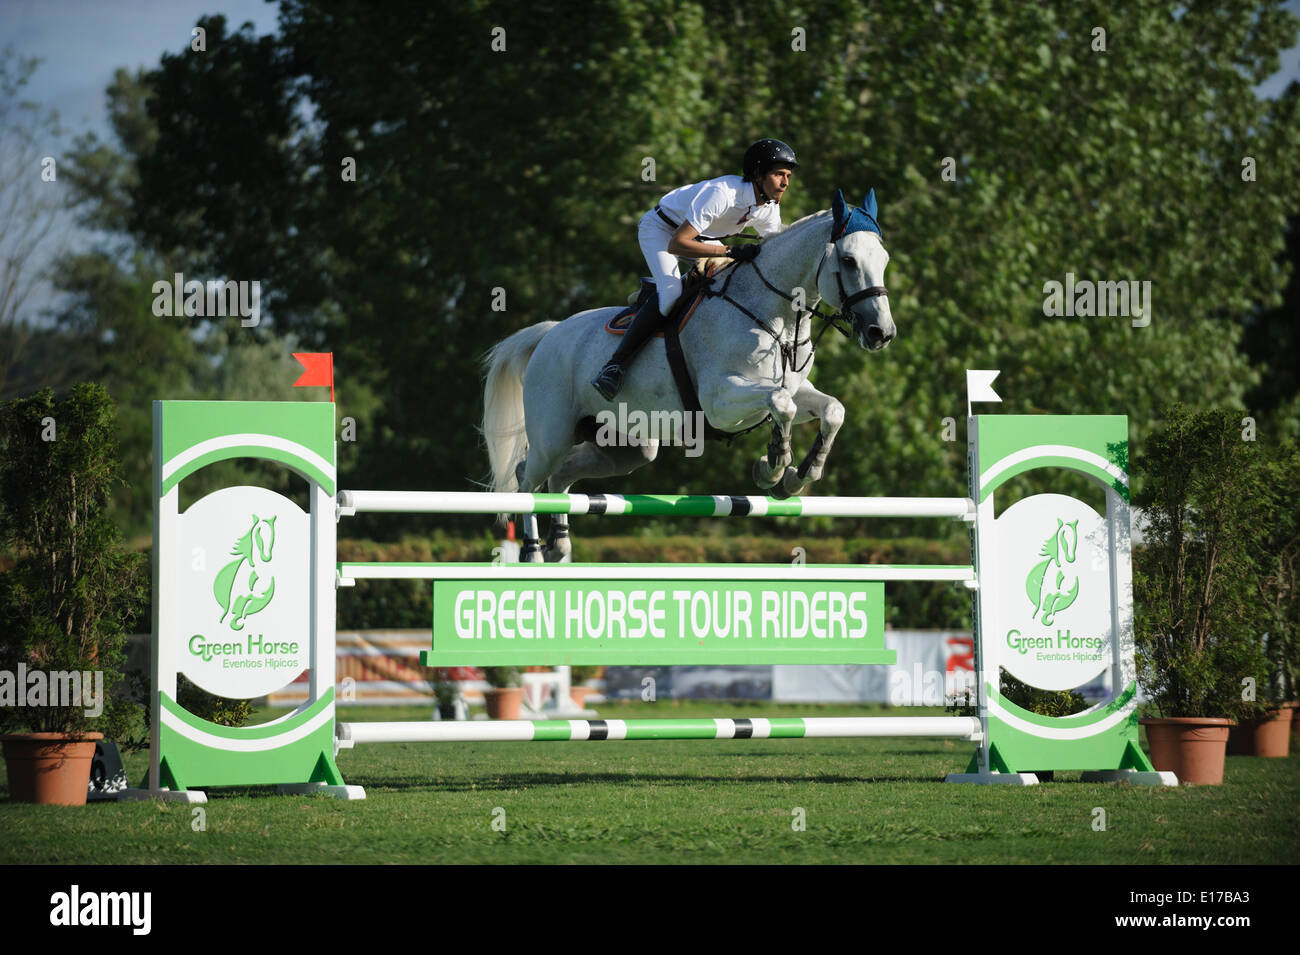 Jinete en caballo saltar por encima de obstáculos durante una competencia ecuestre Foto de stock